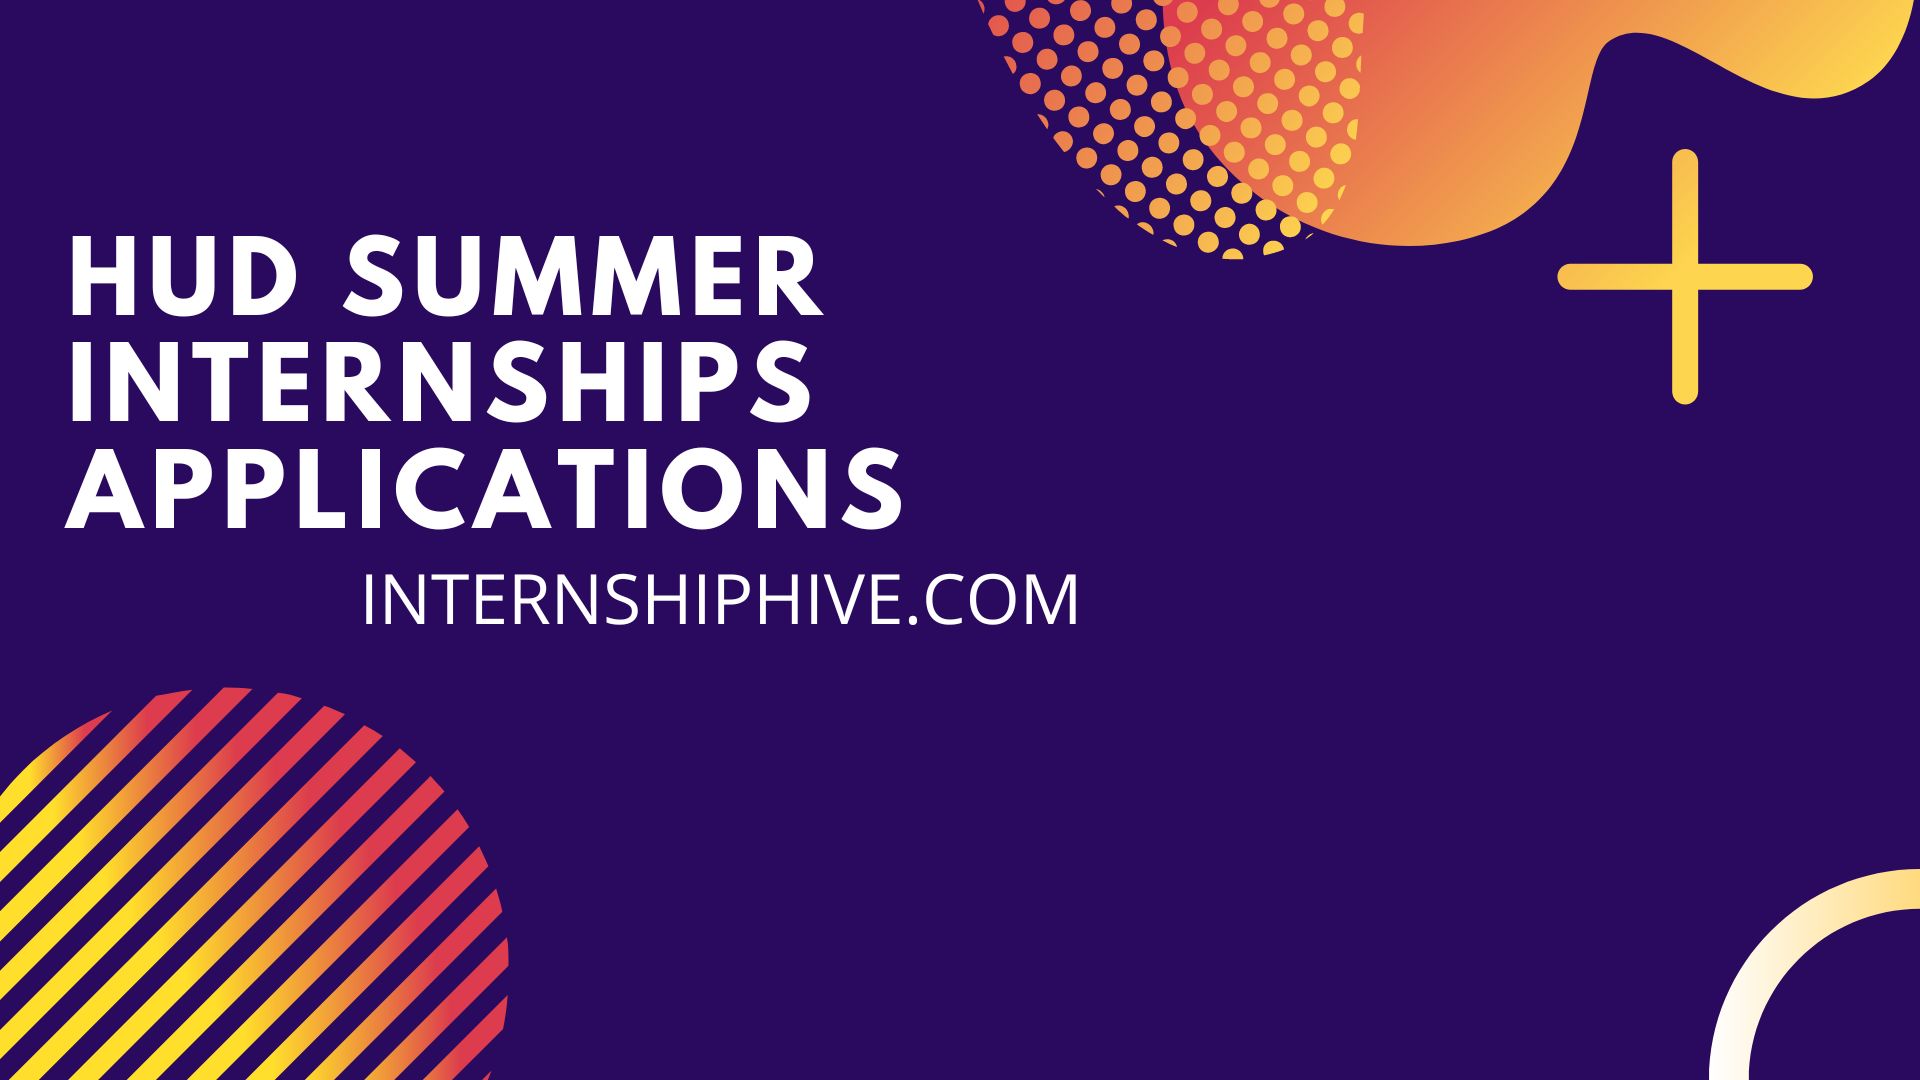 HUD-Summer-Internships-Applications